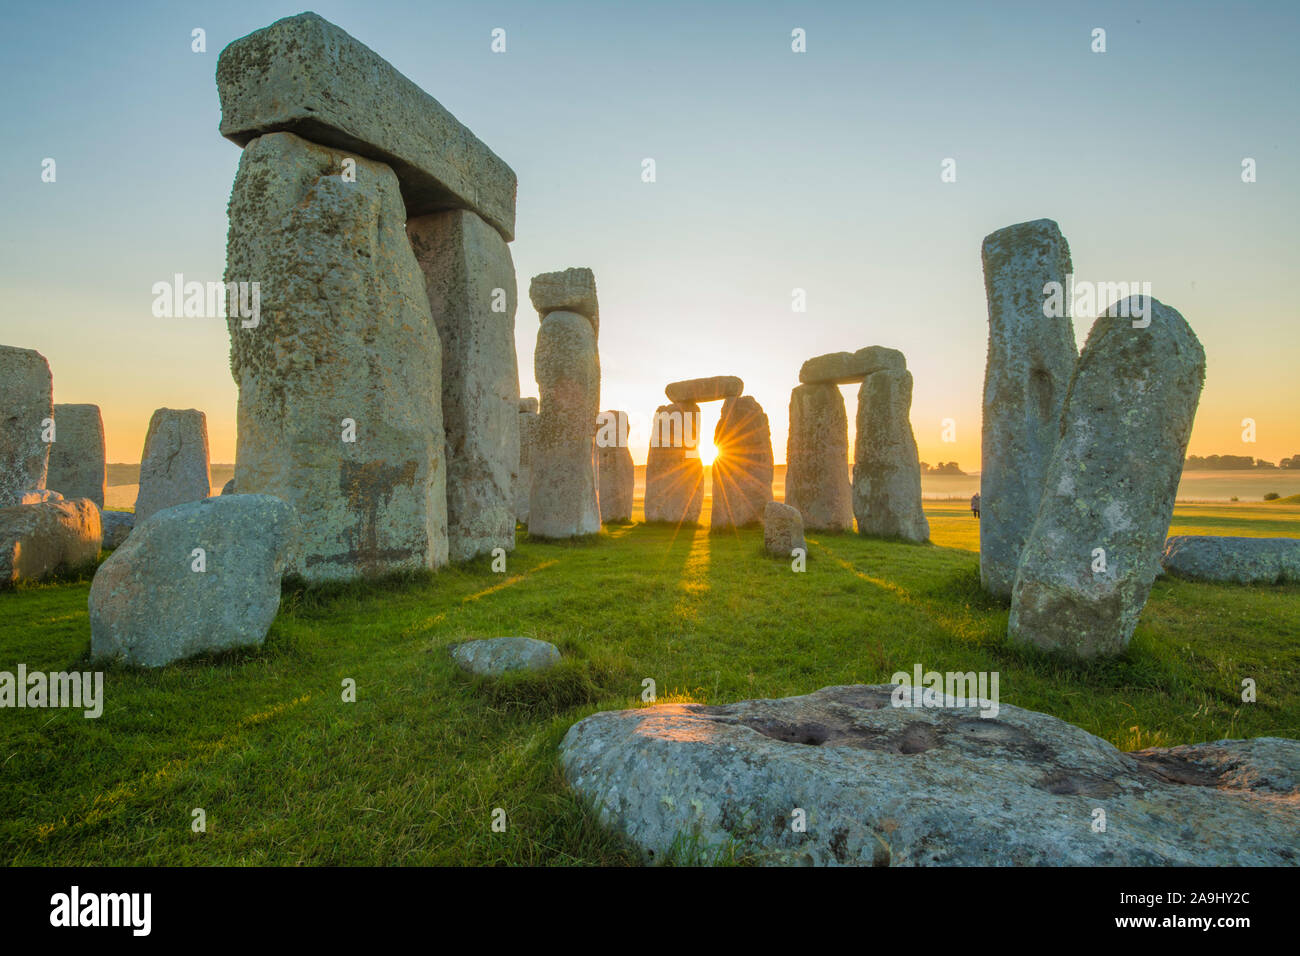 Stonehenge bei Sonnenaufgang, Stein Kreis auf dem Salisbury Plain, 3000-1500 v. Chr., Wiltshire, England, Großbritannien - Europas berühmteste prähistorische Stätte Stockfoto